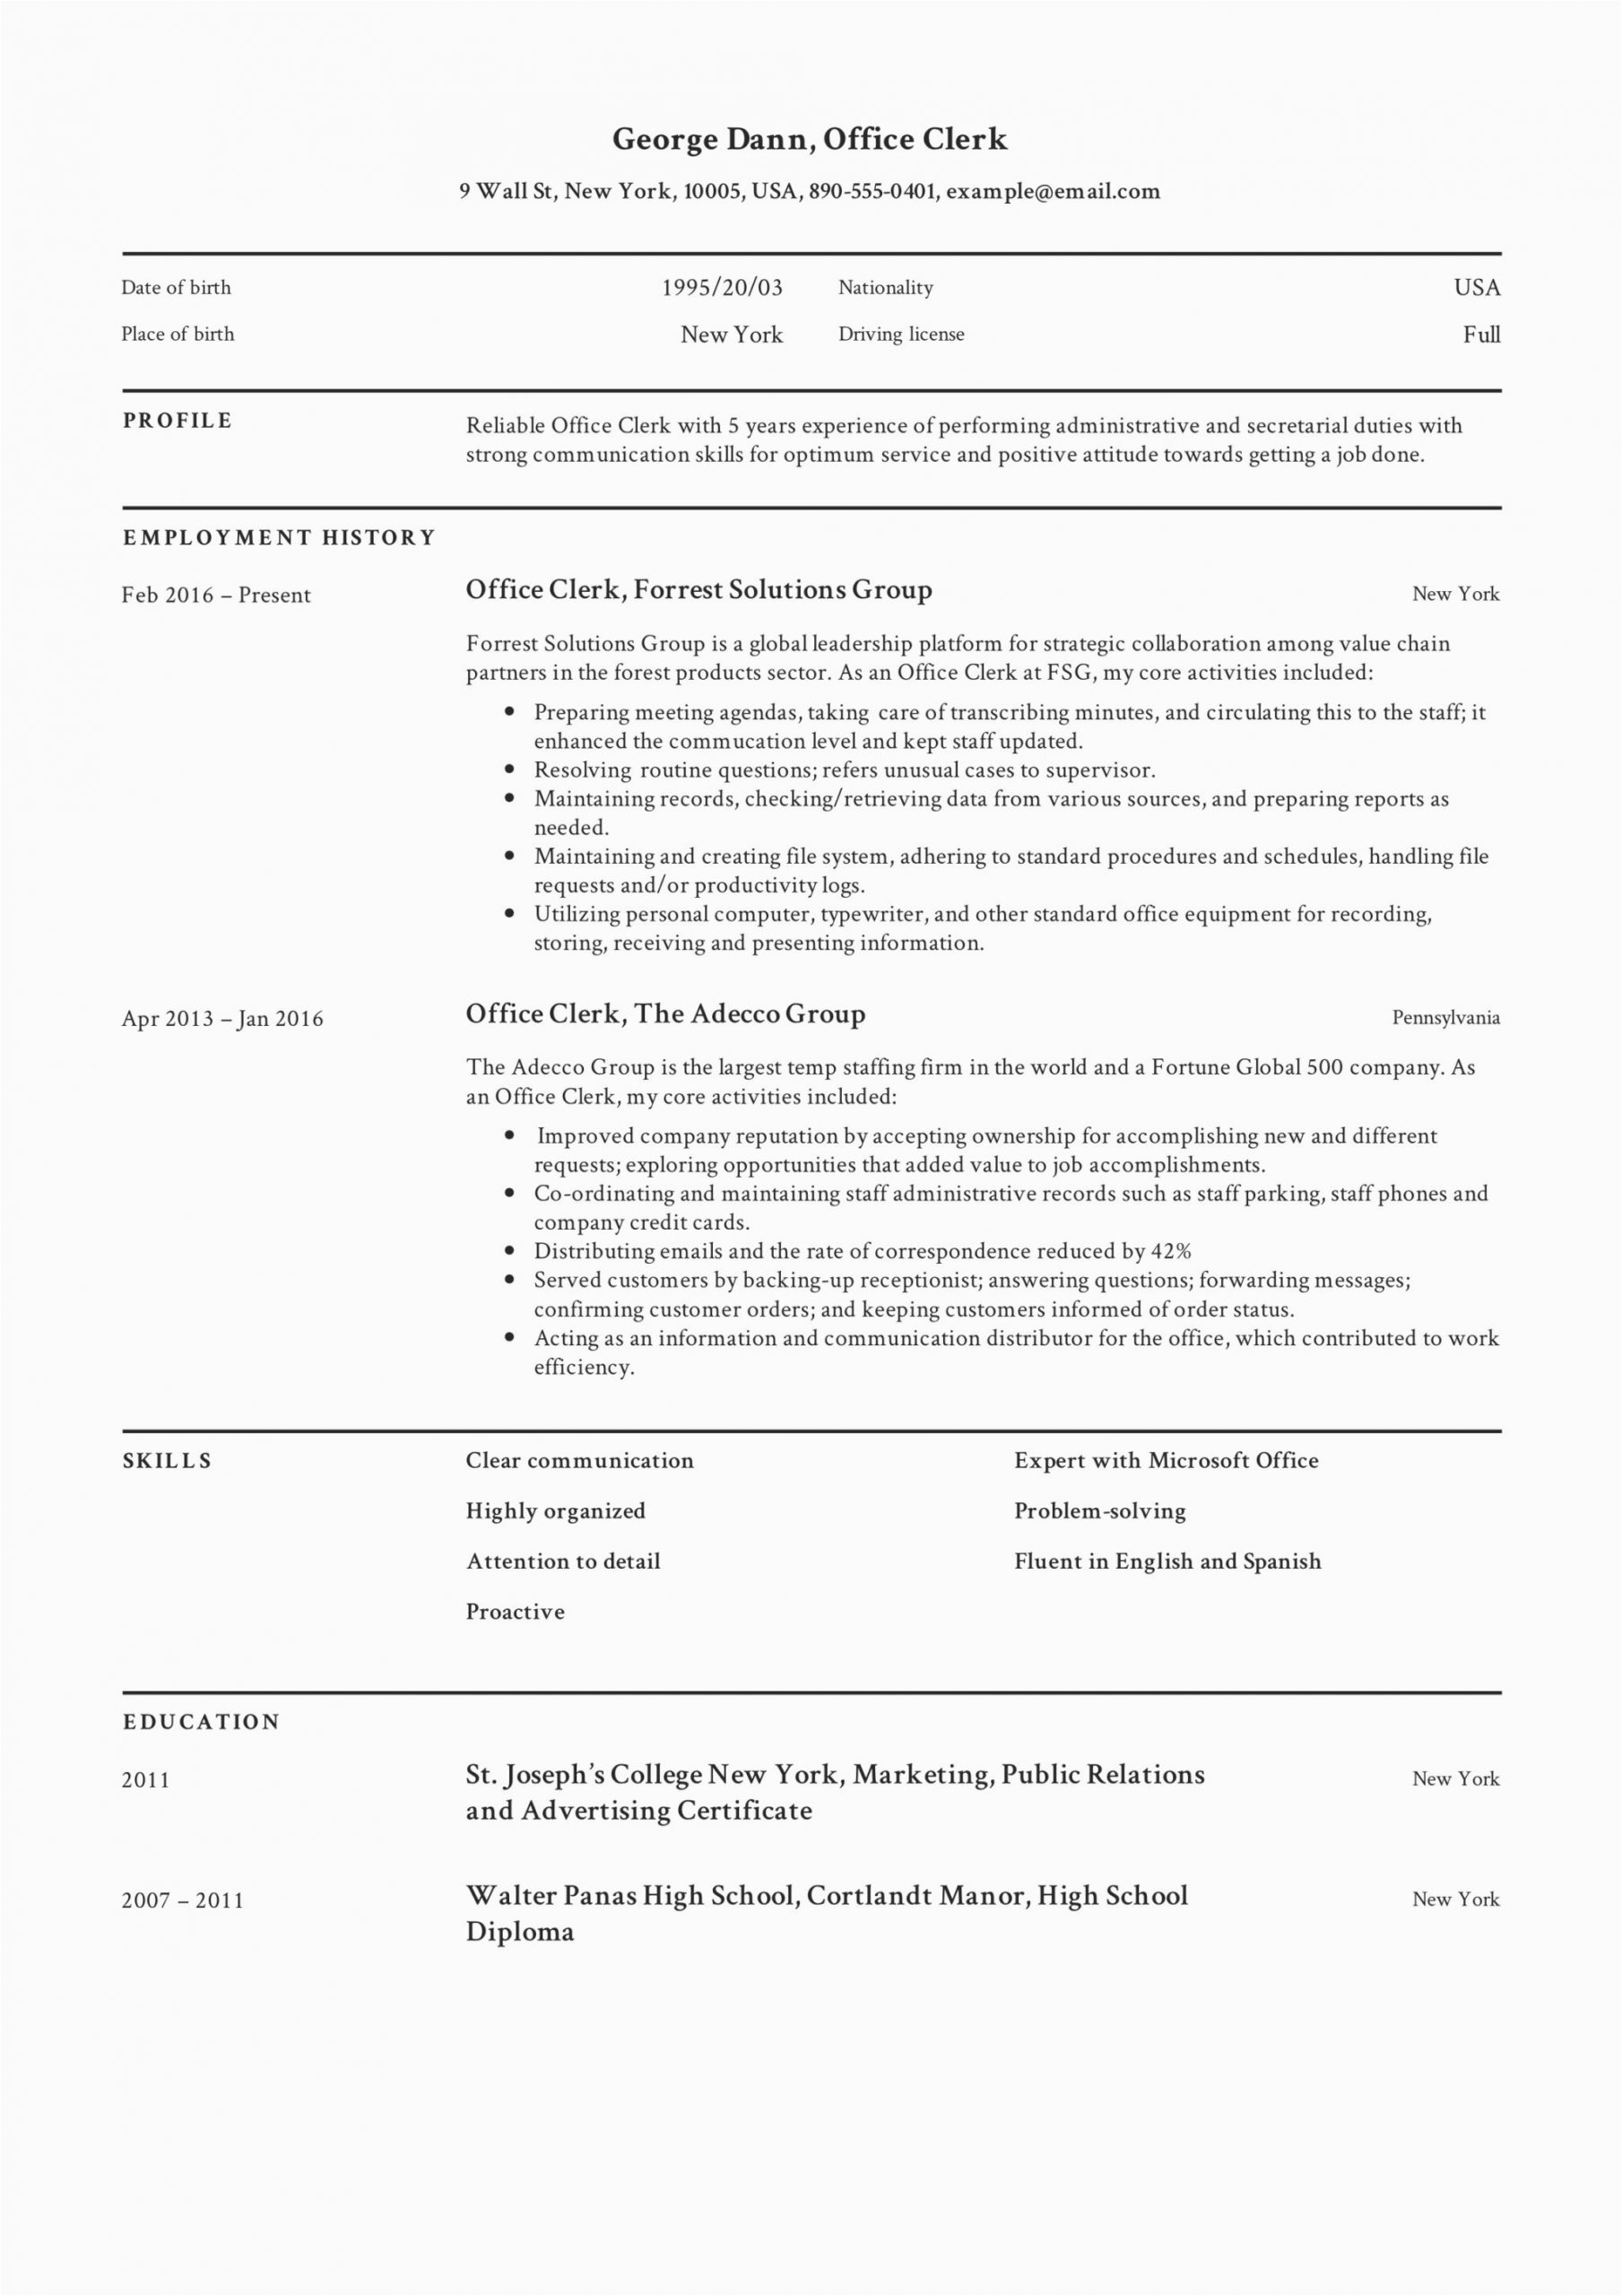 Sample Resume for Clerical Office Work Full Guide Fice Clerk Resume [ 12] Samples Pdf